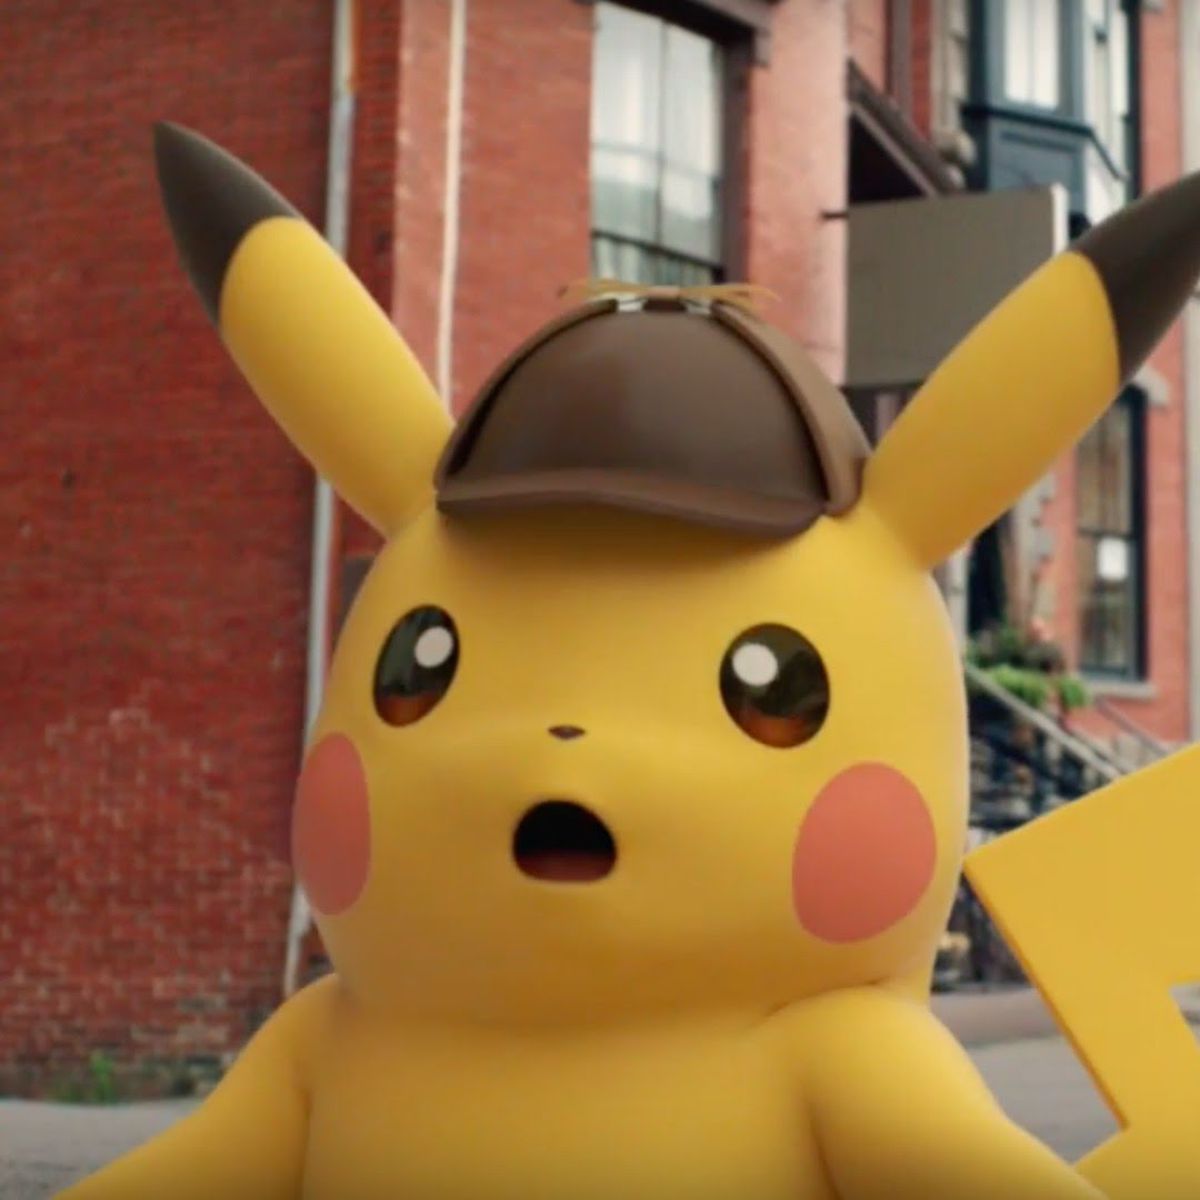 Il detective Pikachu ha un'espressione sorpresa sul volto.